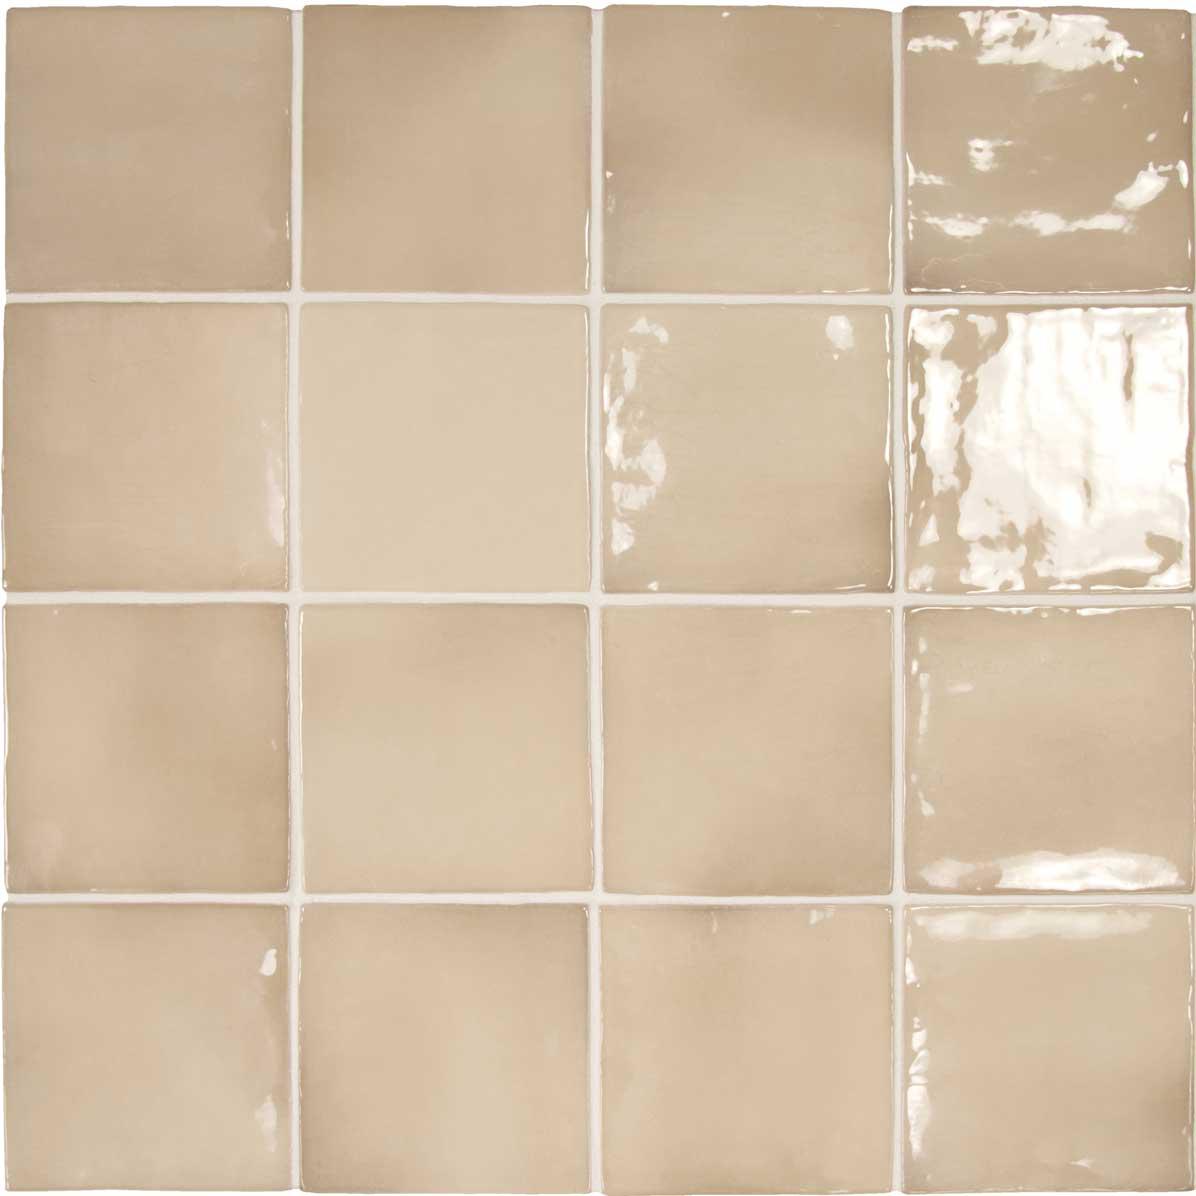 Lake Beige Glazed Ceramic Tile 4x4 Square | Tile Club 